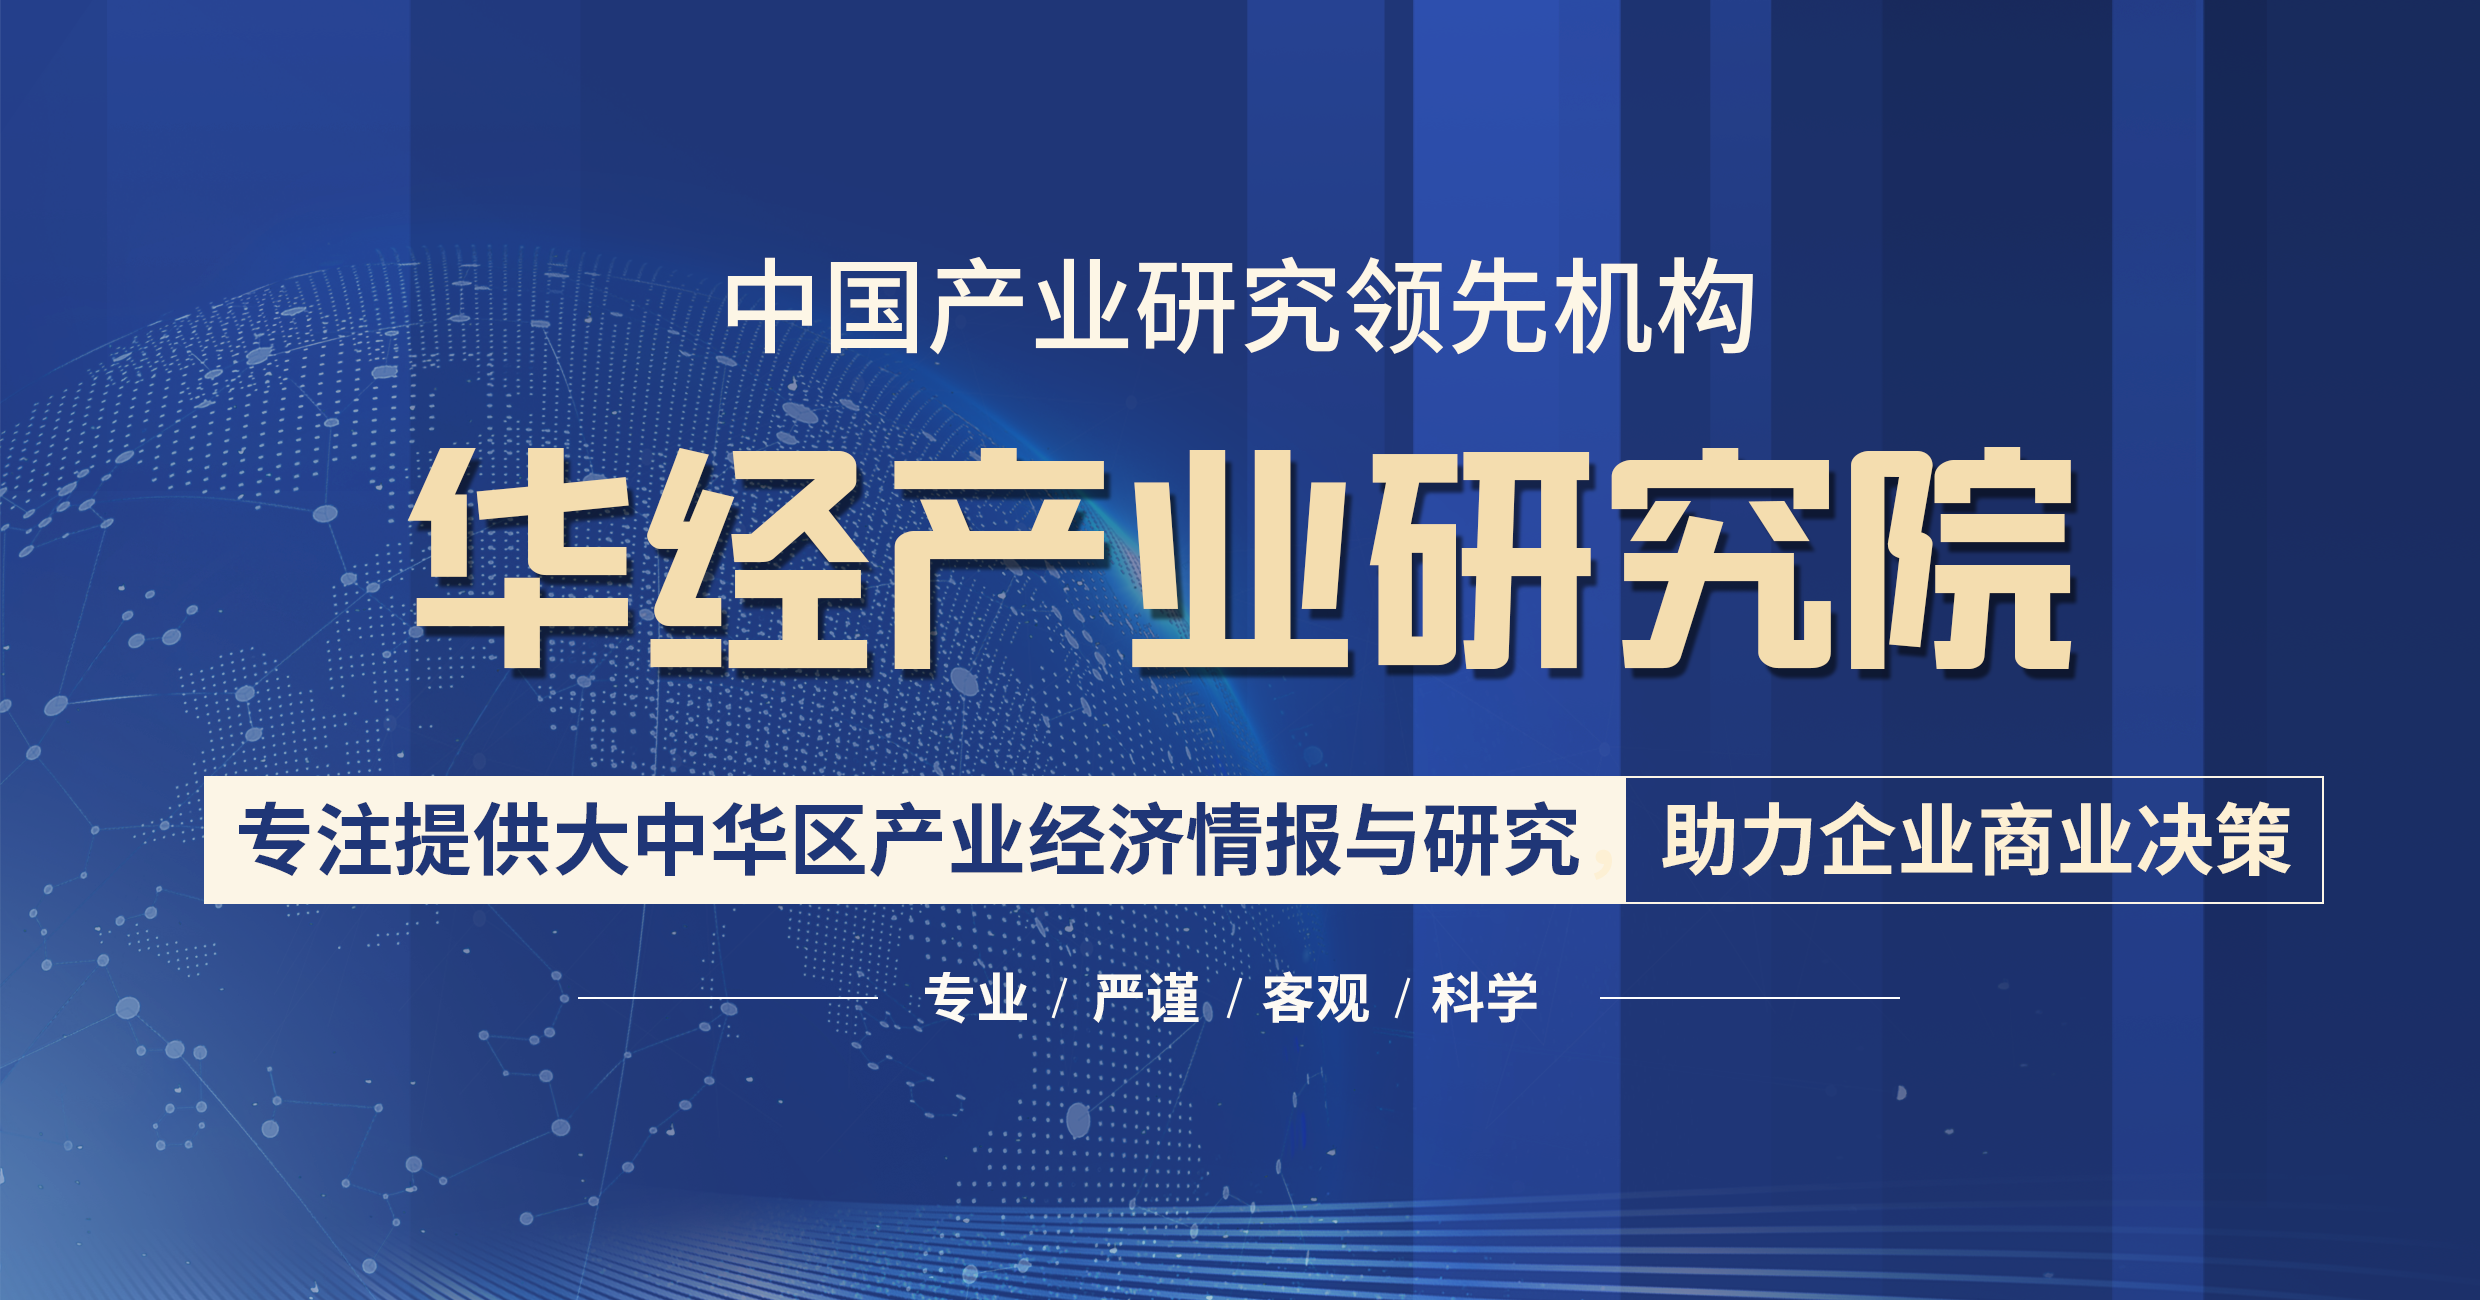 2022年贵州省高考报名人数、录取分数线、上线人数及一分一档表